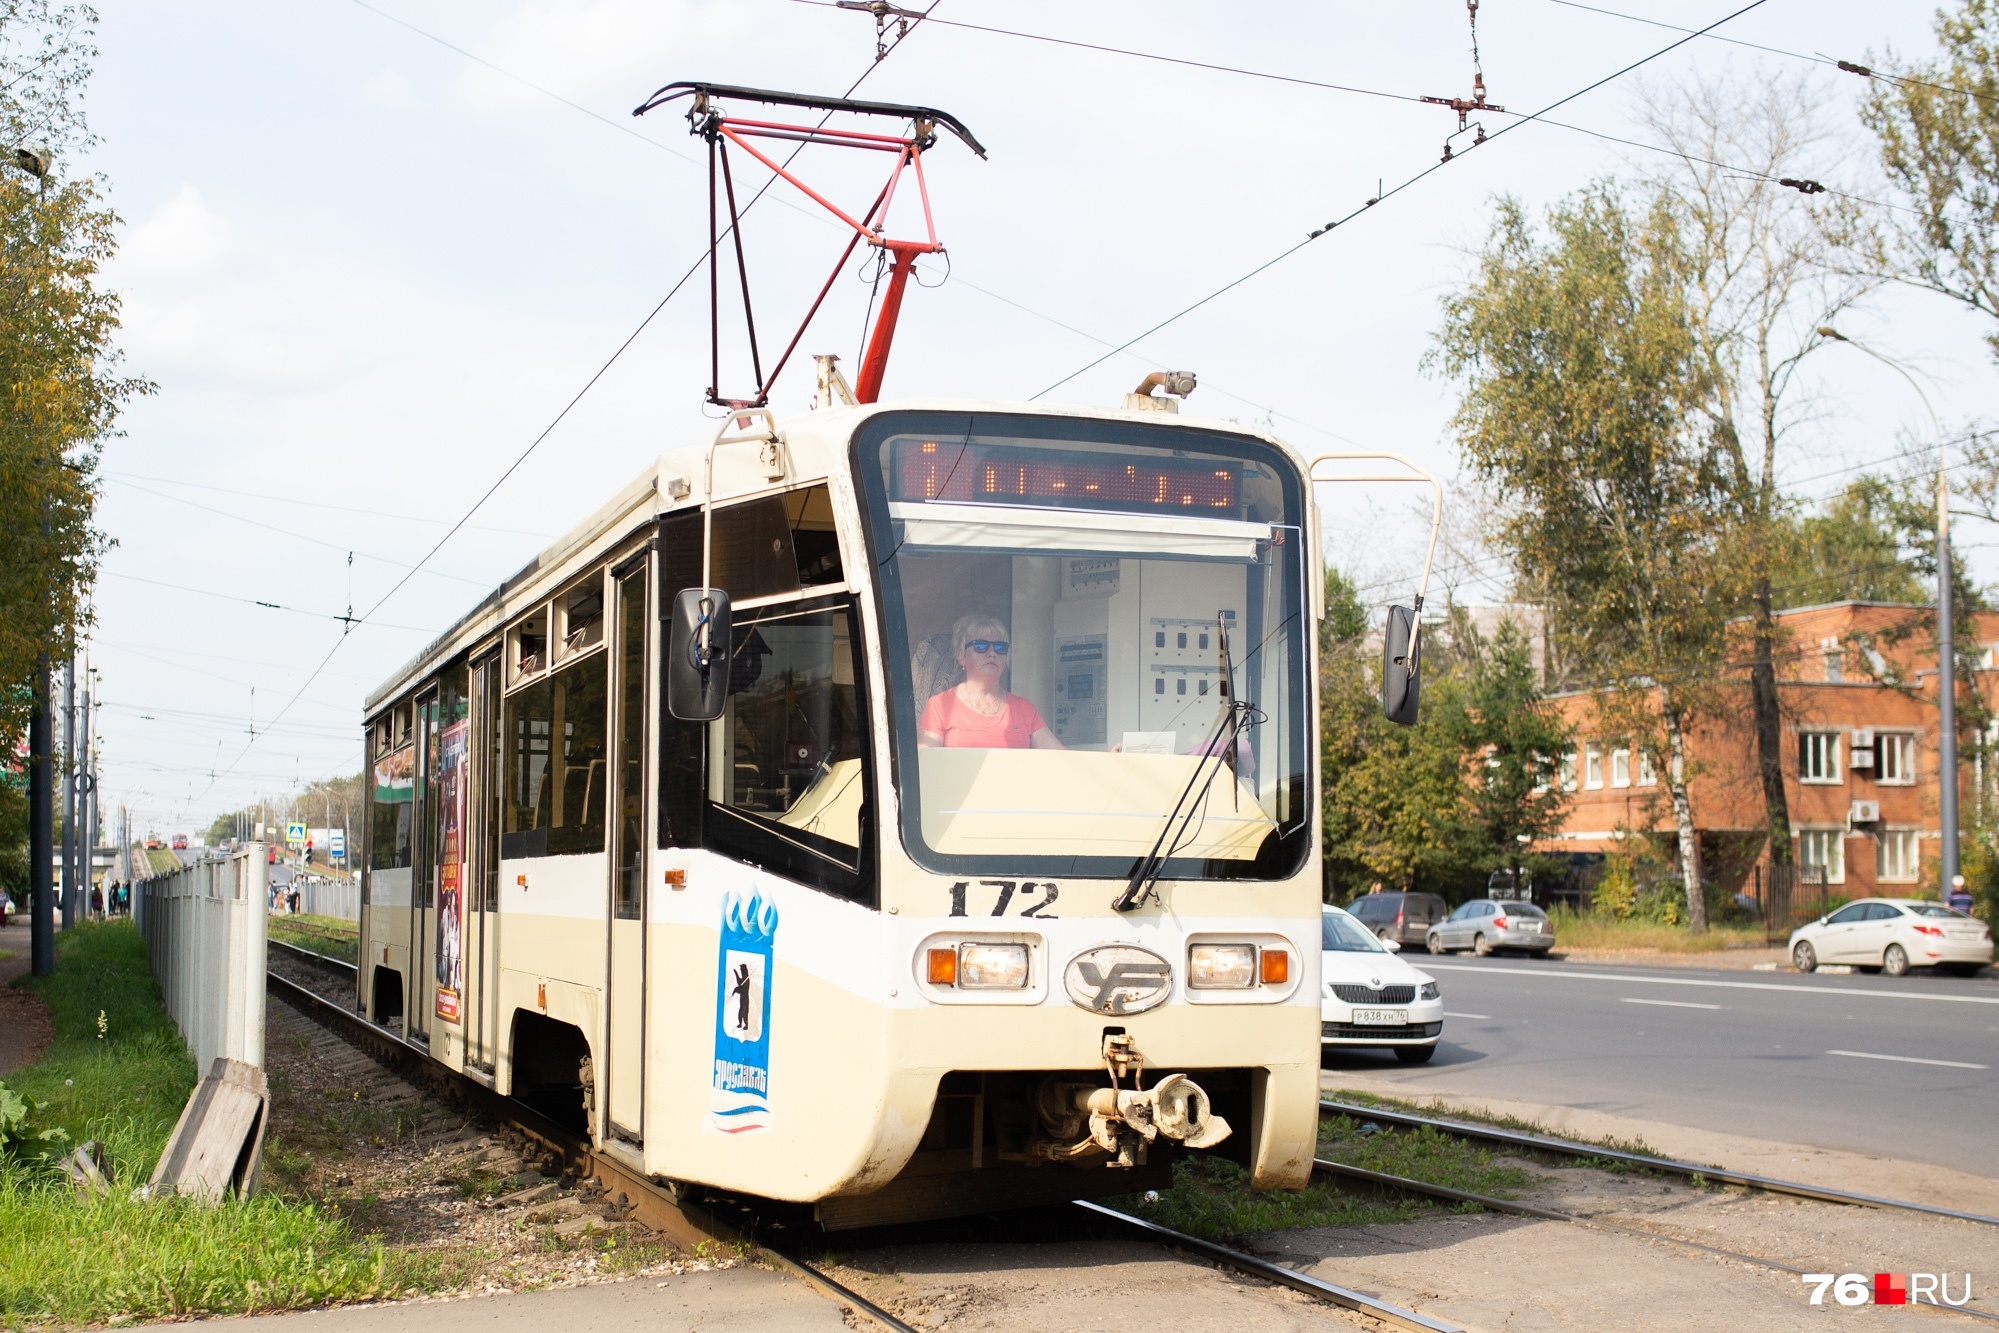 О продлении трамвайных и троллейбусных сетей в мэрии разговаривают давно 